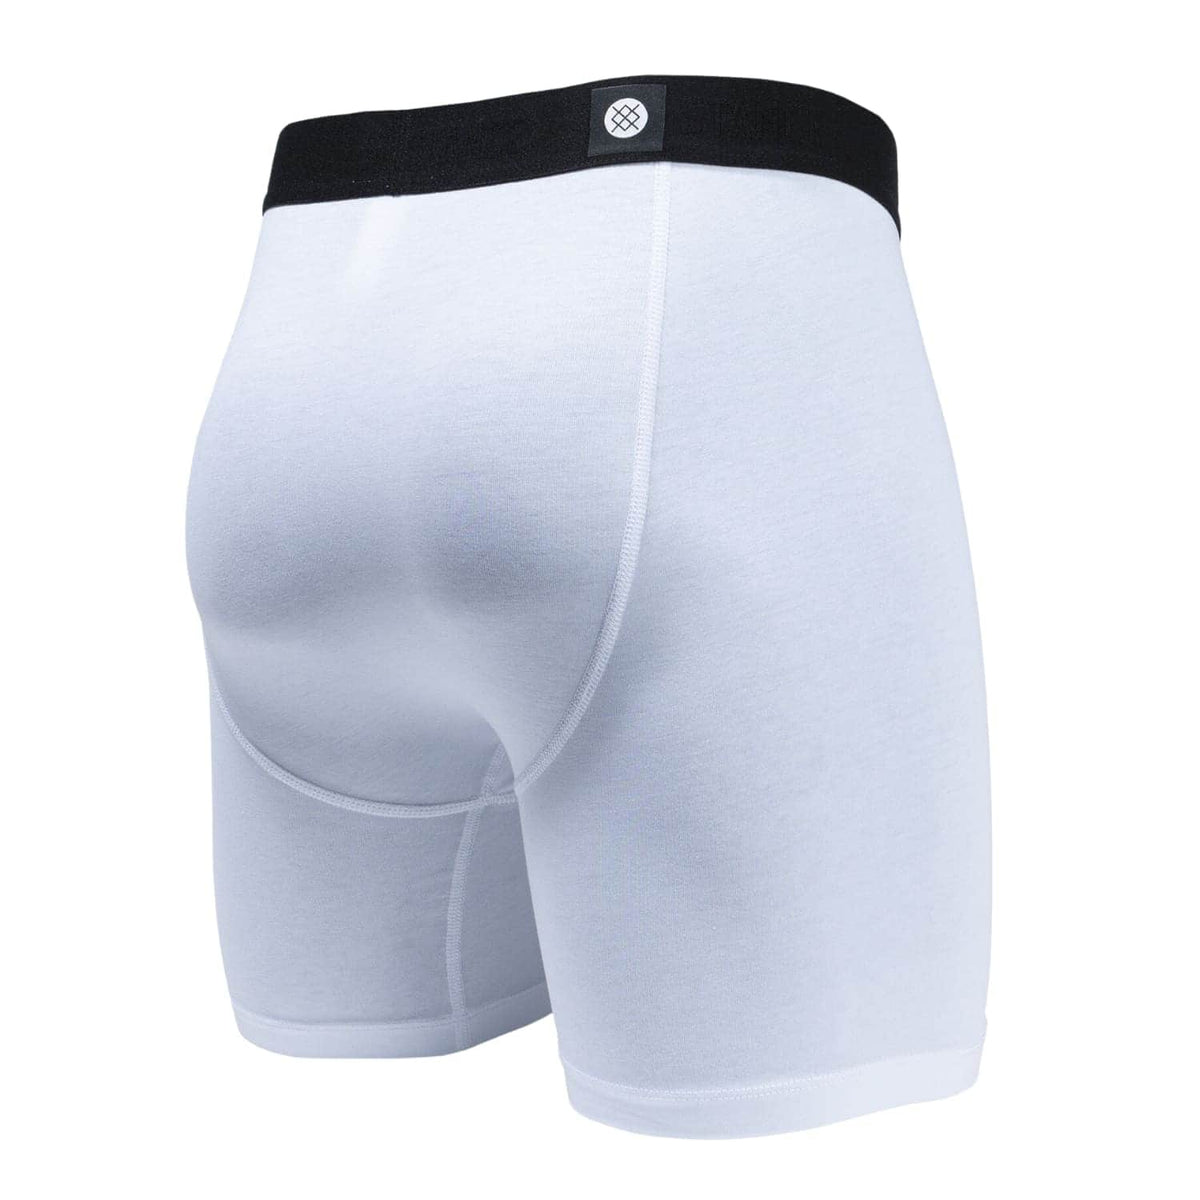 Stance Standard 6in Boxer Brief - White - Mens Boxer Briefs Underwear by Stance